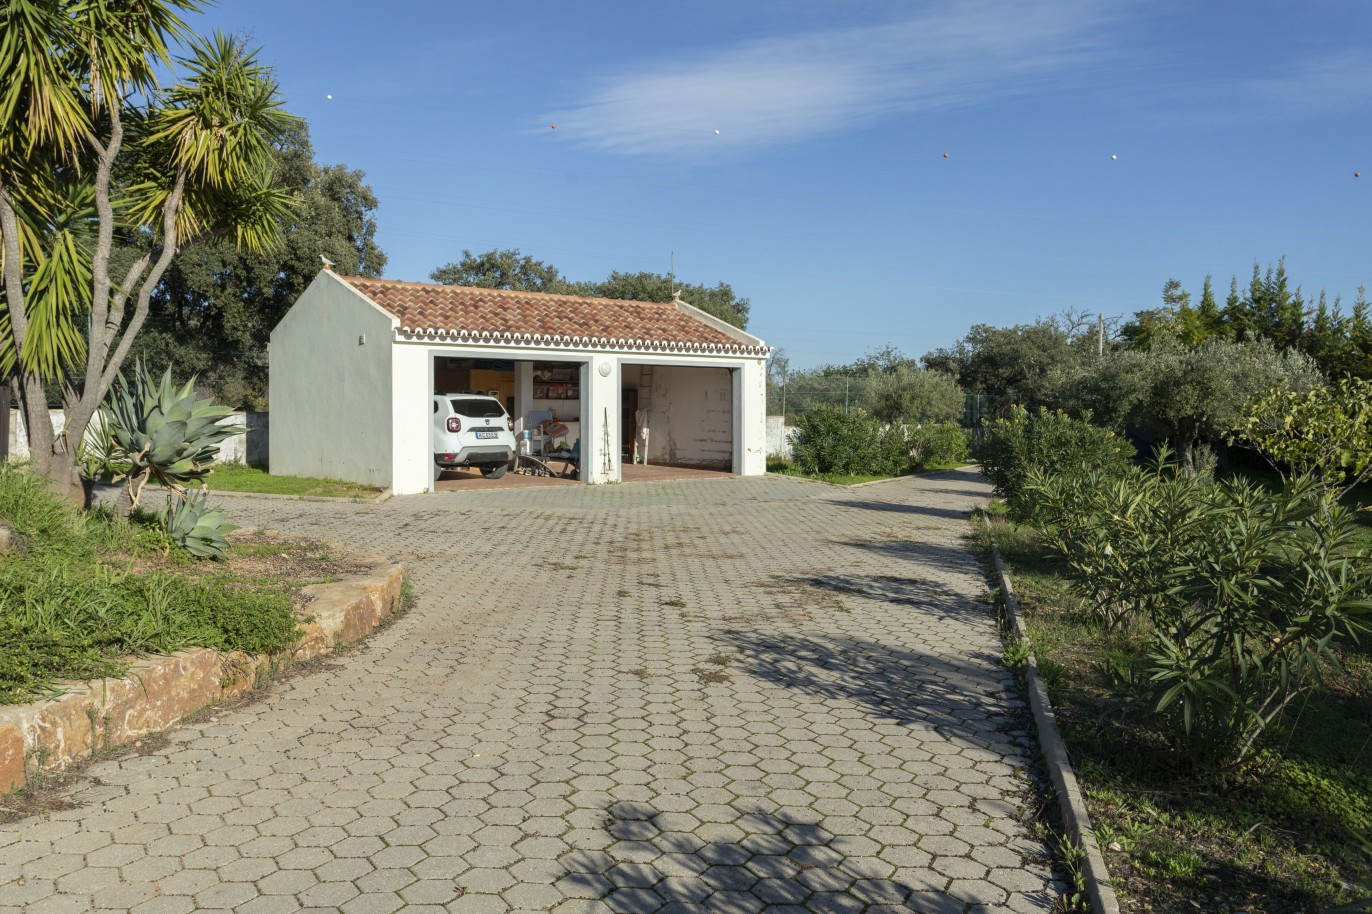 Moradia V4 com piscina, para venda em São Brás de Alportel, Algarve_245034